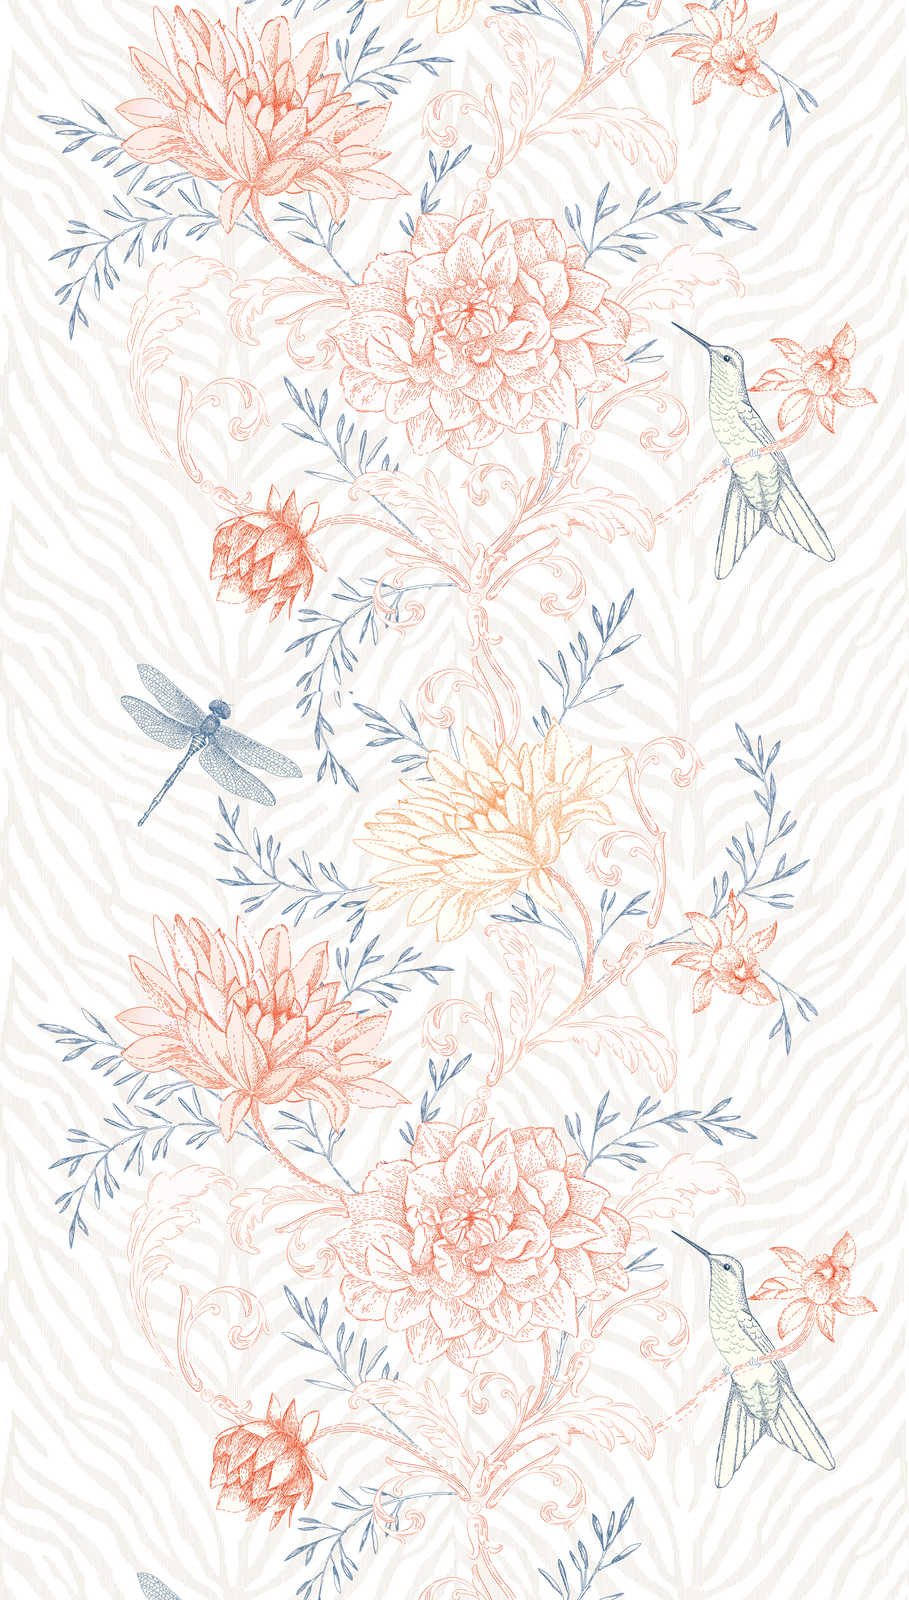             Helle Blumenranken Tapete mit Vögeln und Libellen – Bunt, Orange, Blau
        